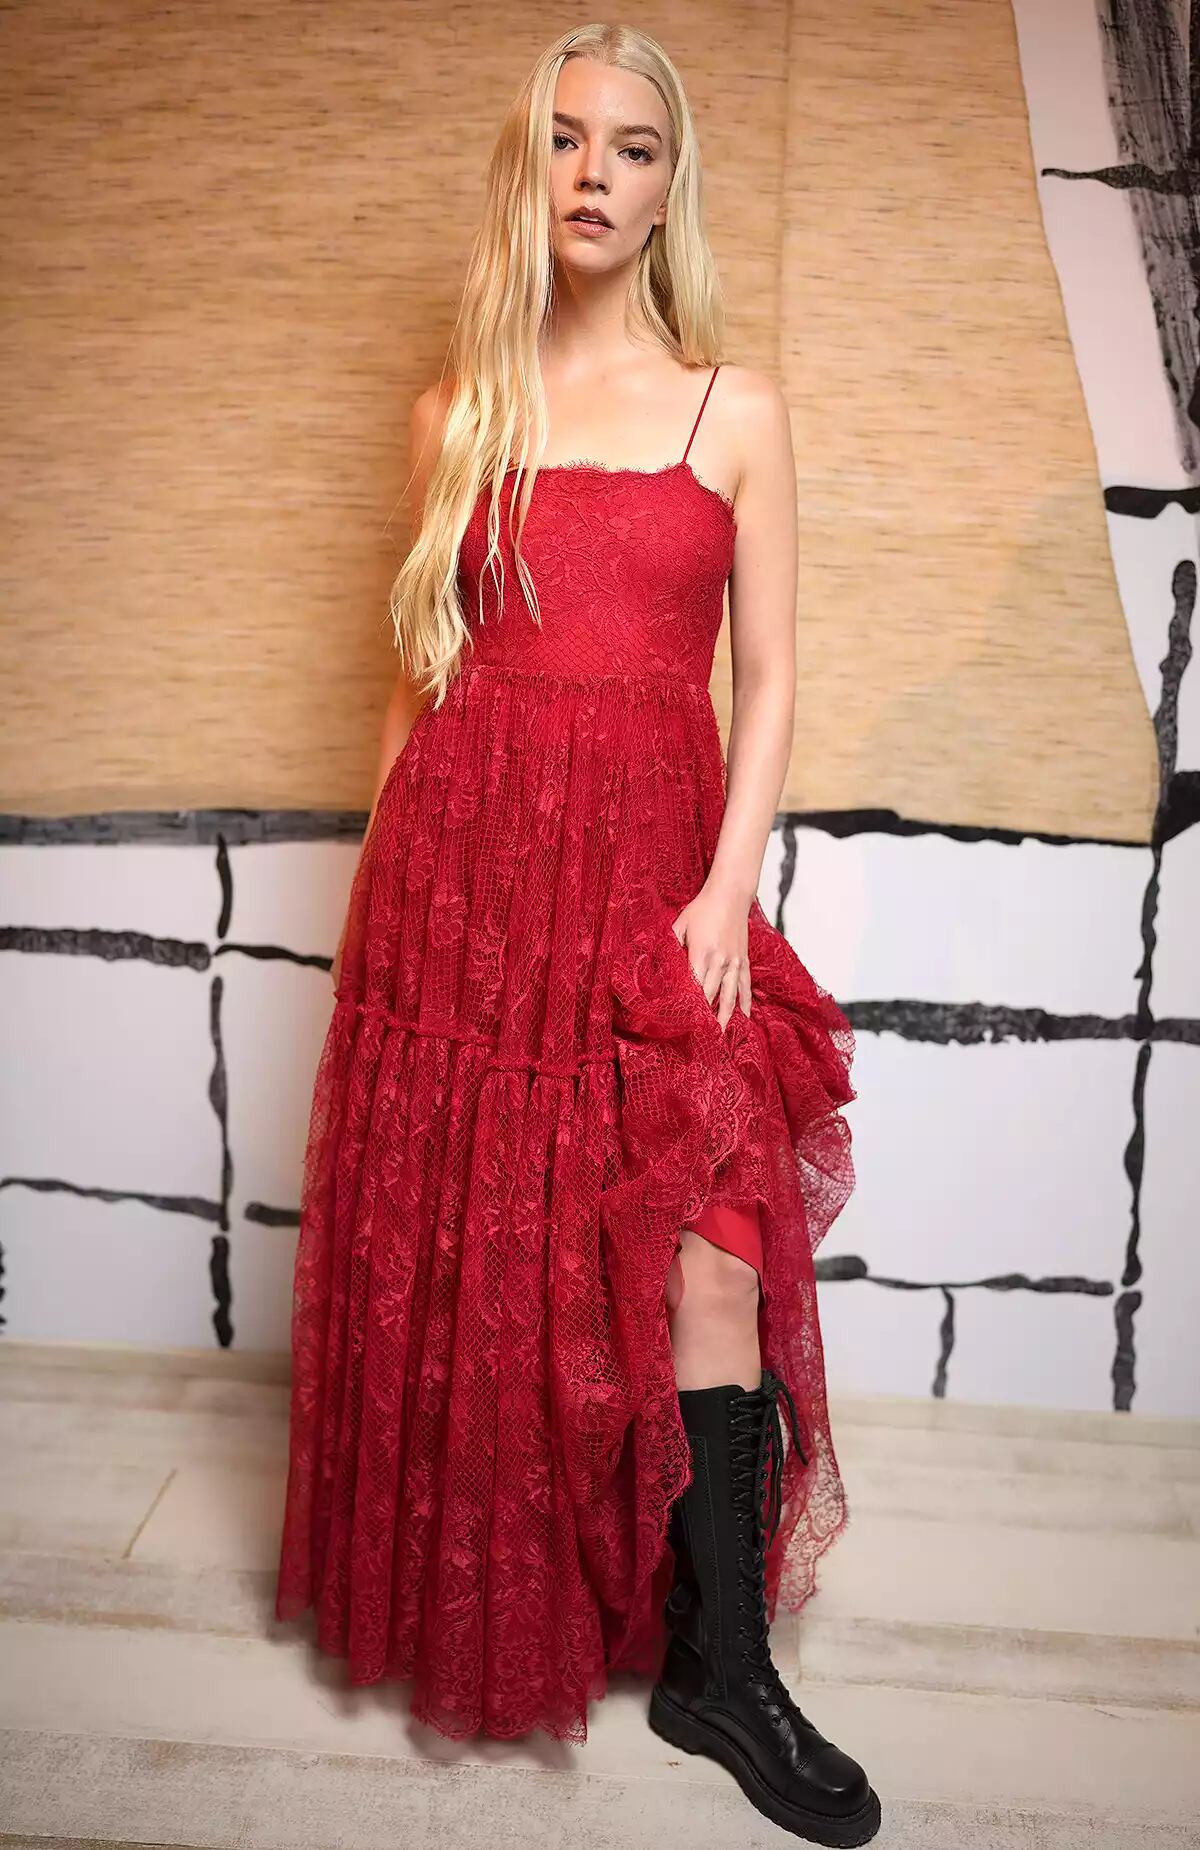 La actriz Anya Taylor-Joy lució un vestido de encaje rojo combinado con botas de moto hasta la rodilla.